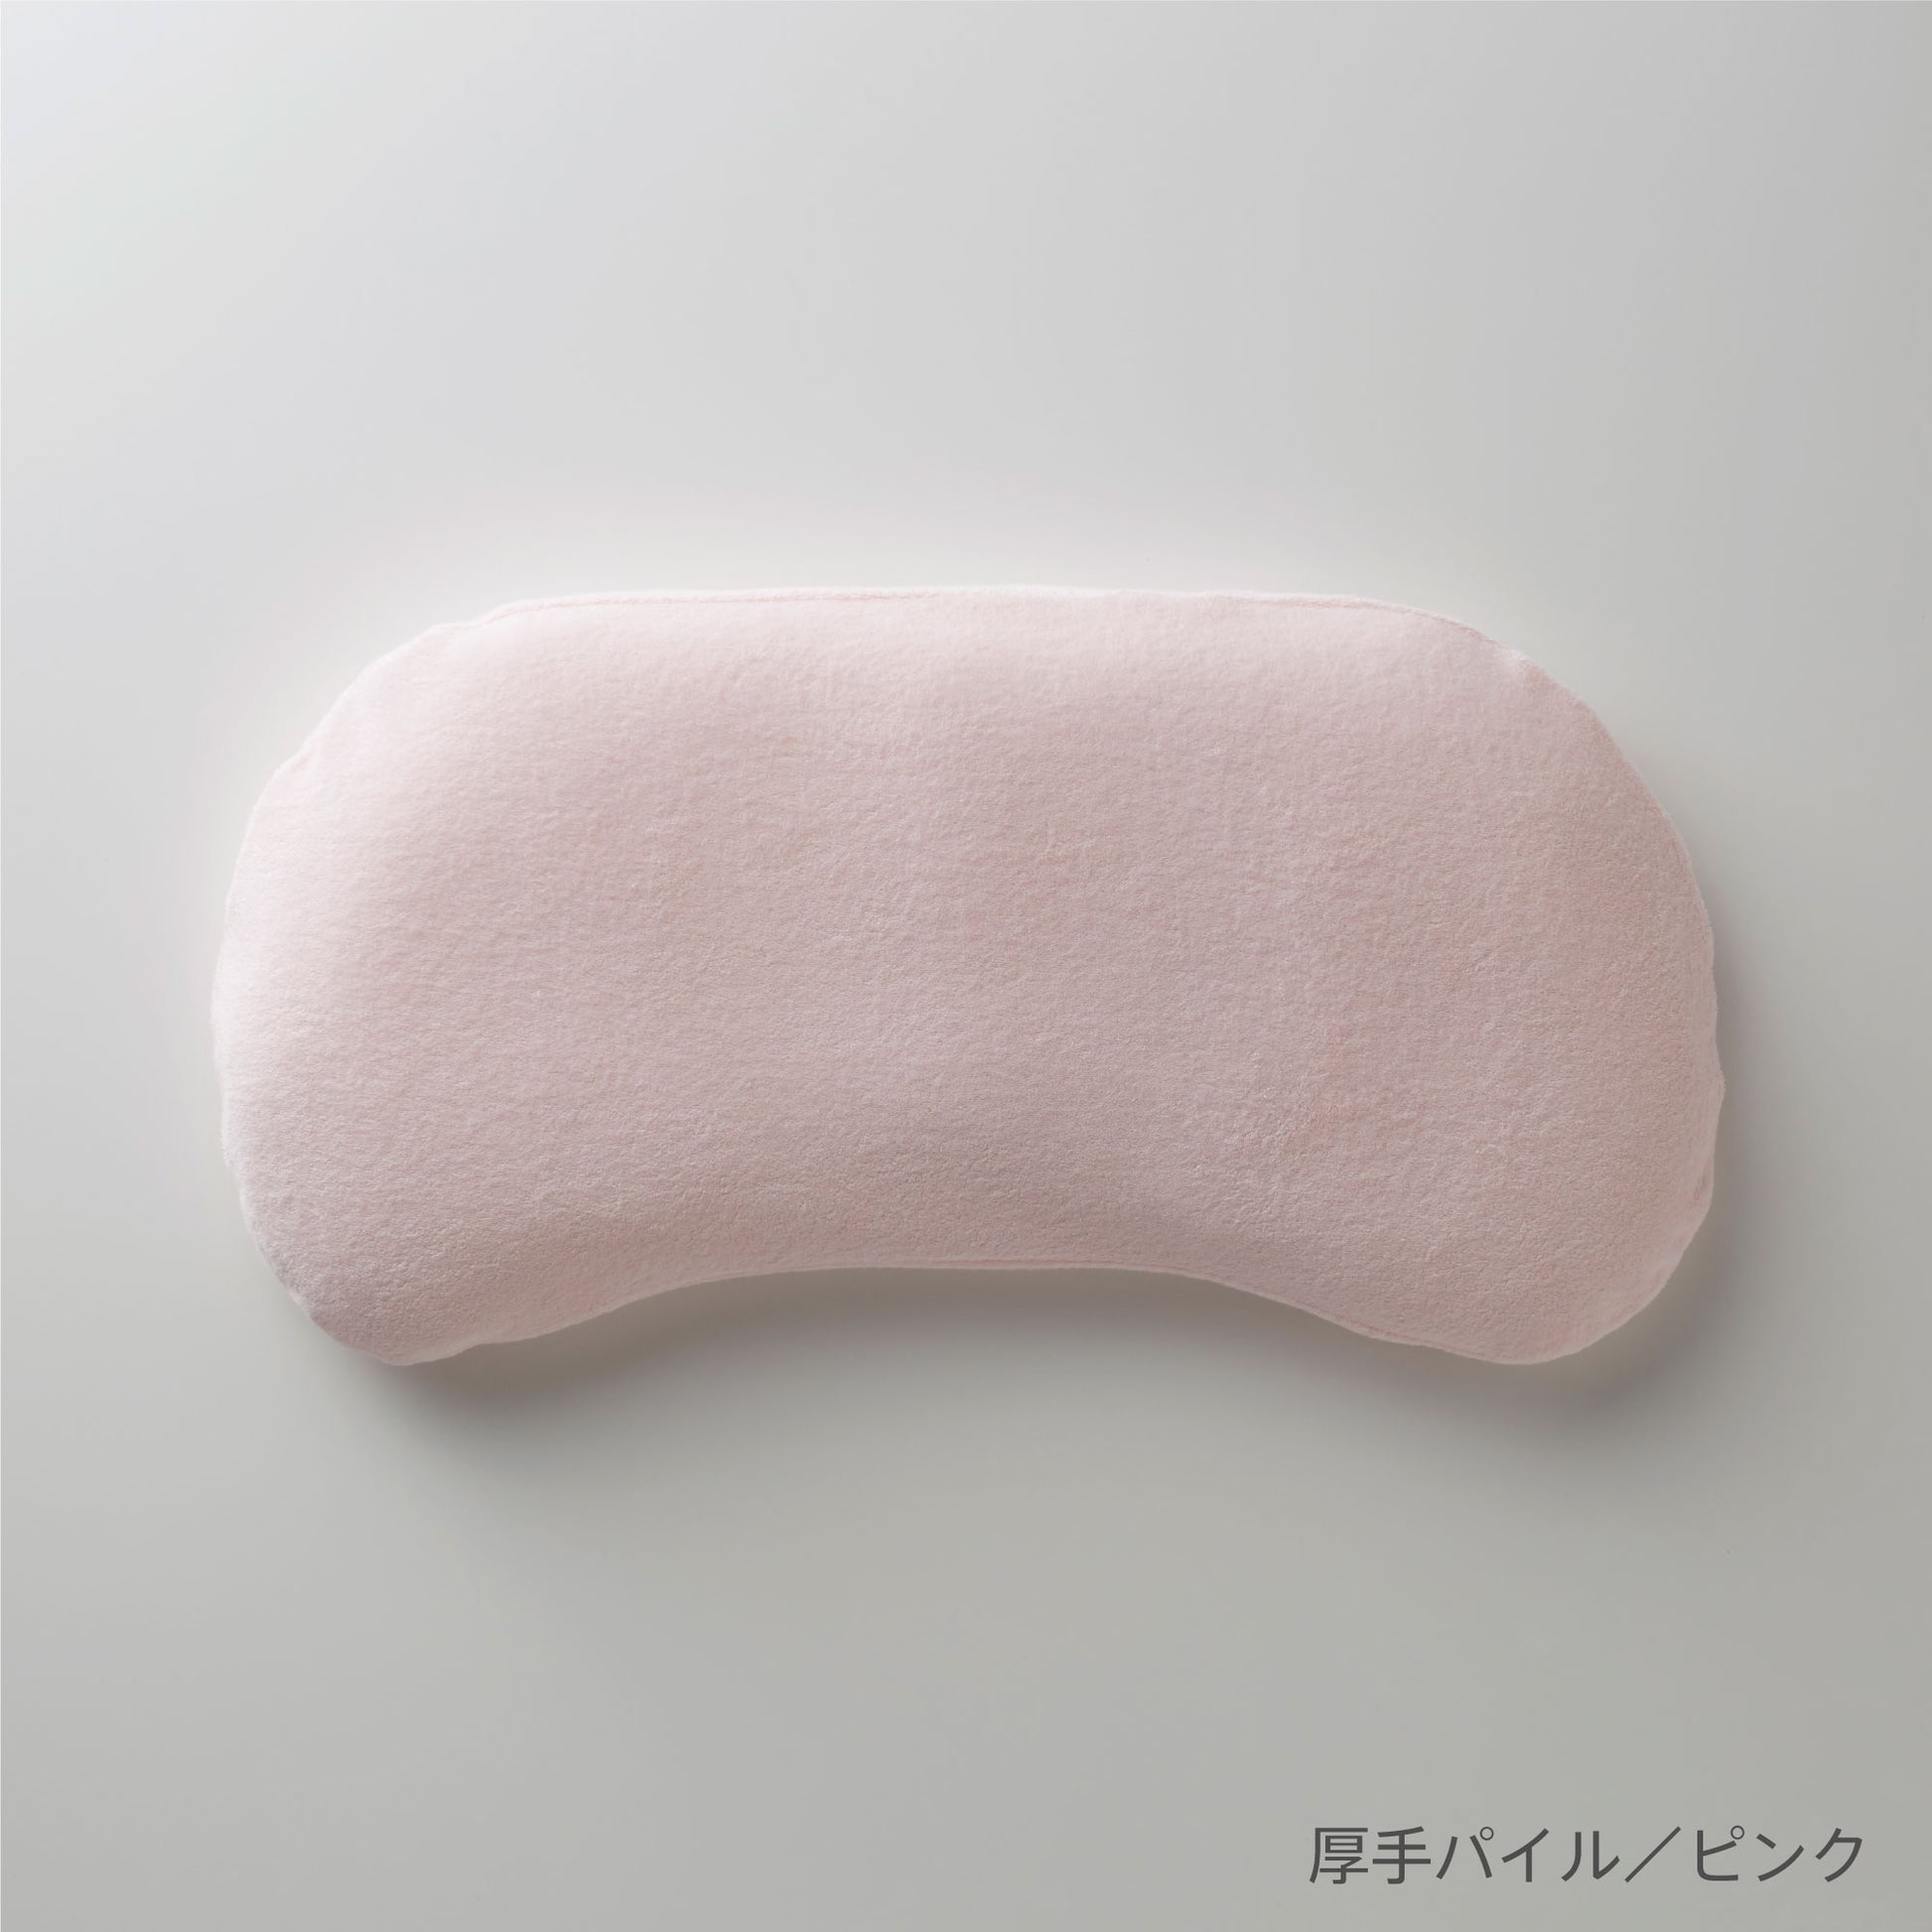 まくらのキタムラ ジムナストプラス用枕カバー 2つのマテリアルと計8カラー